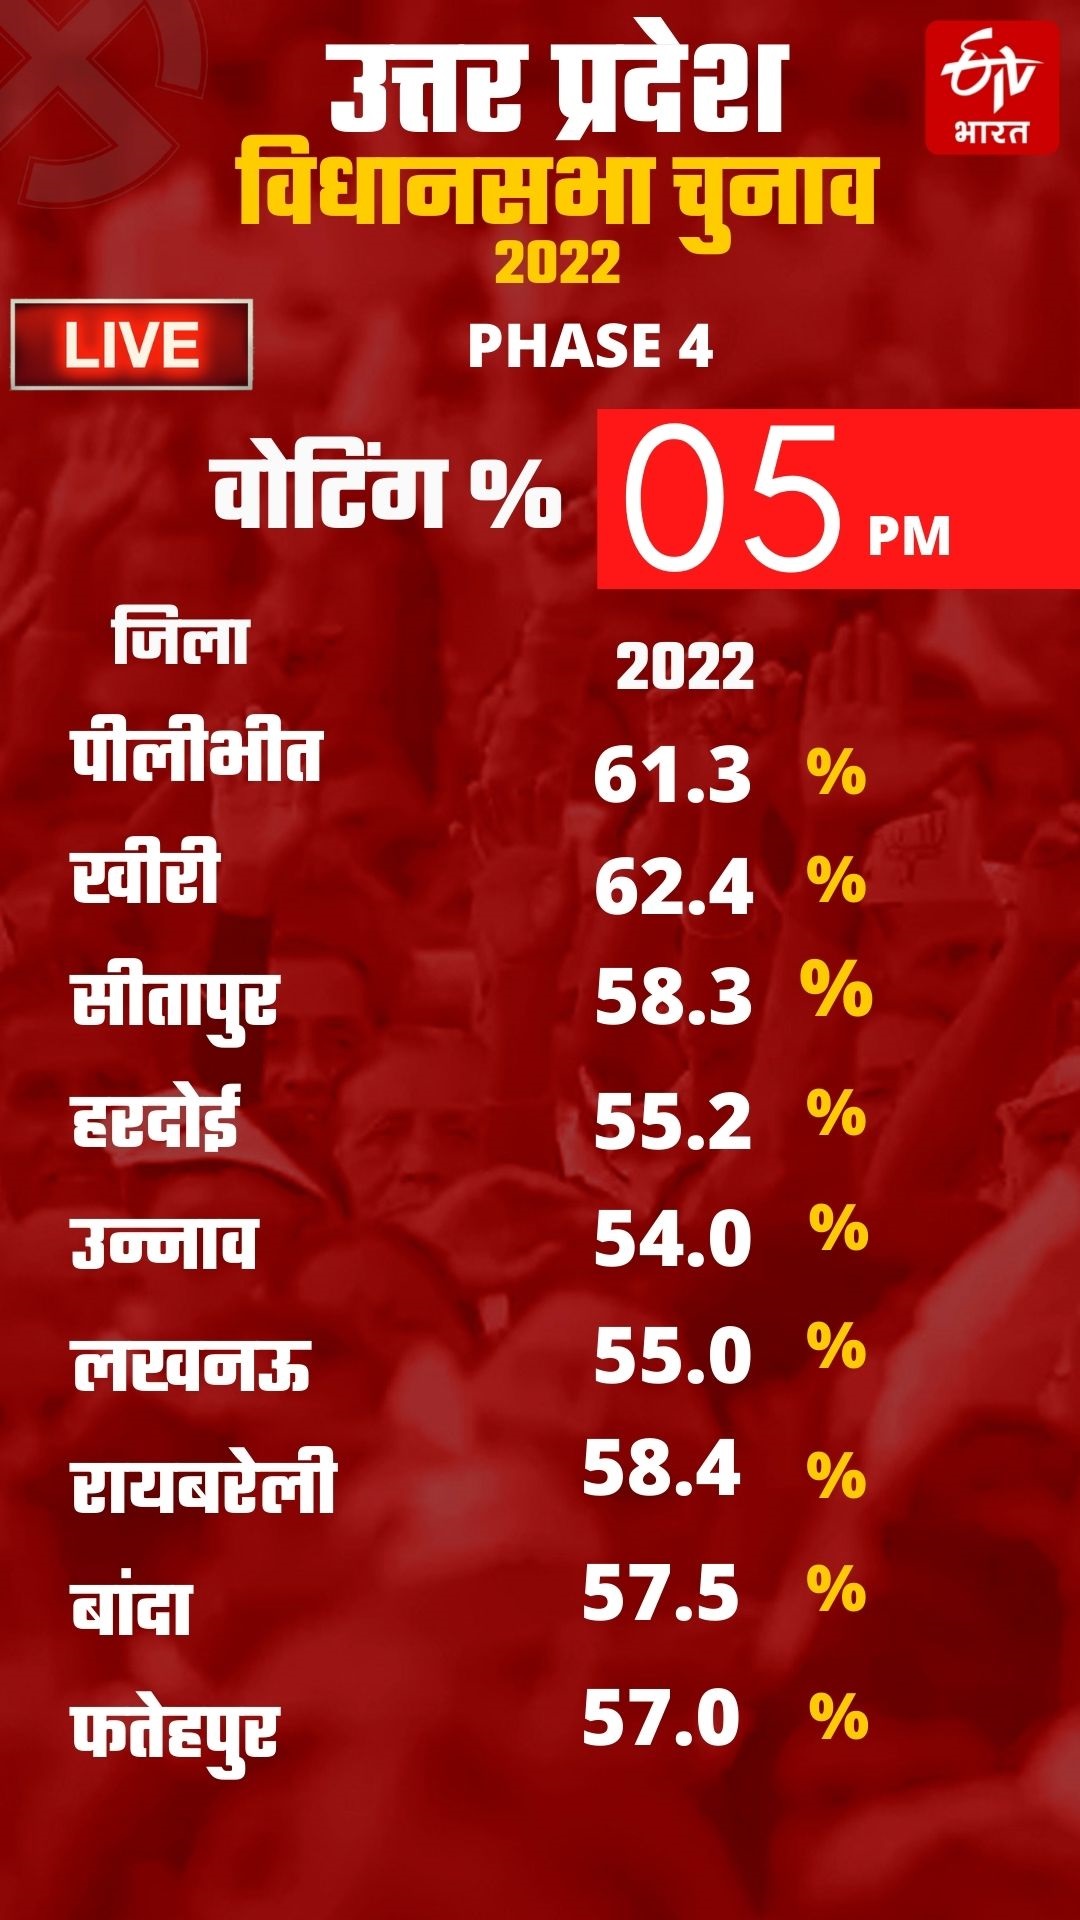 UP Assembly Election 2022 LIVE: वोटिंग में लखीमपुर खीरी सबसे आगे, पीलीभीत दूसरे नंबर पर...